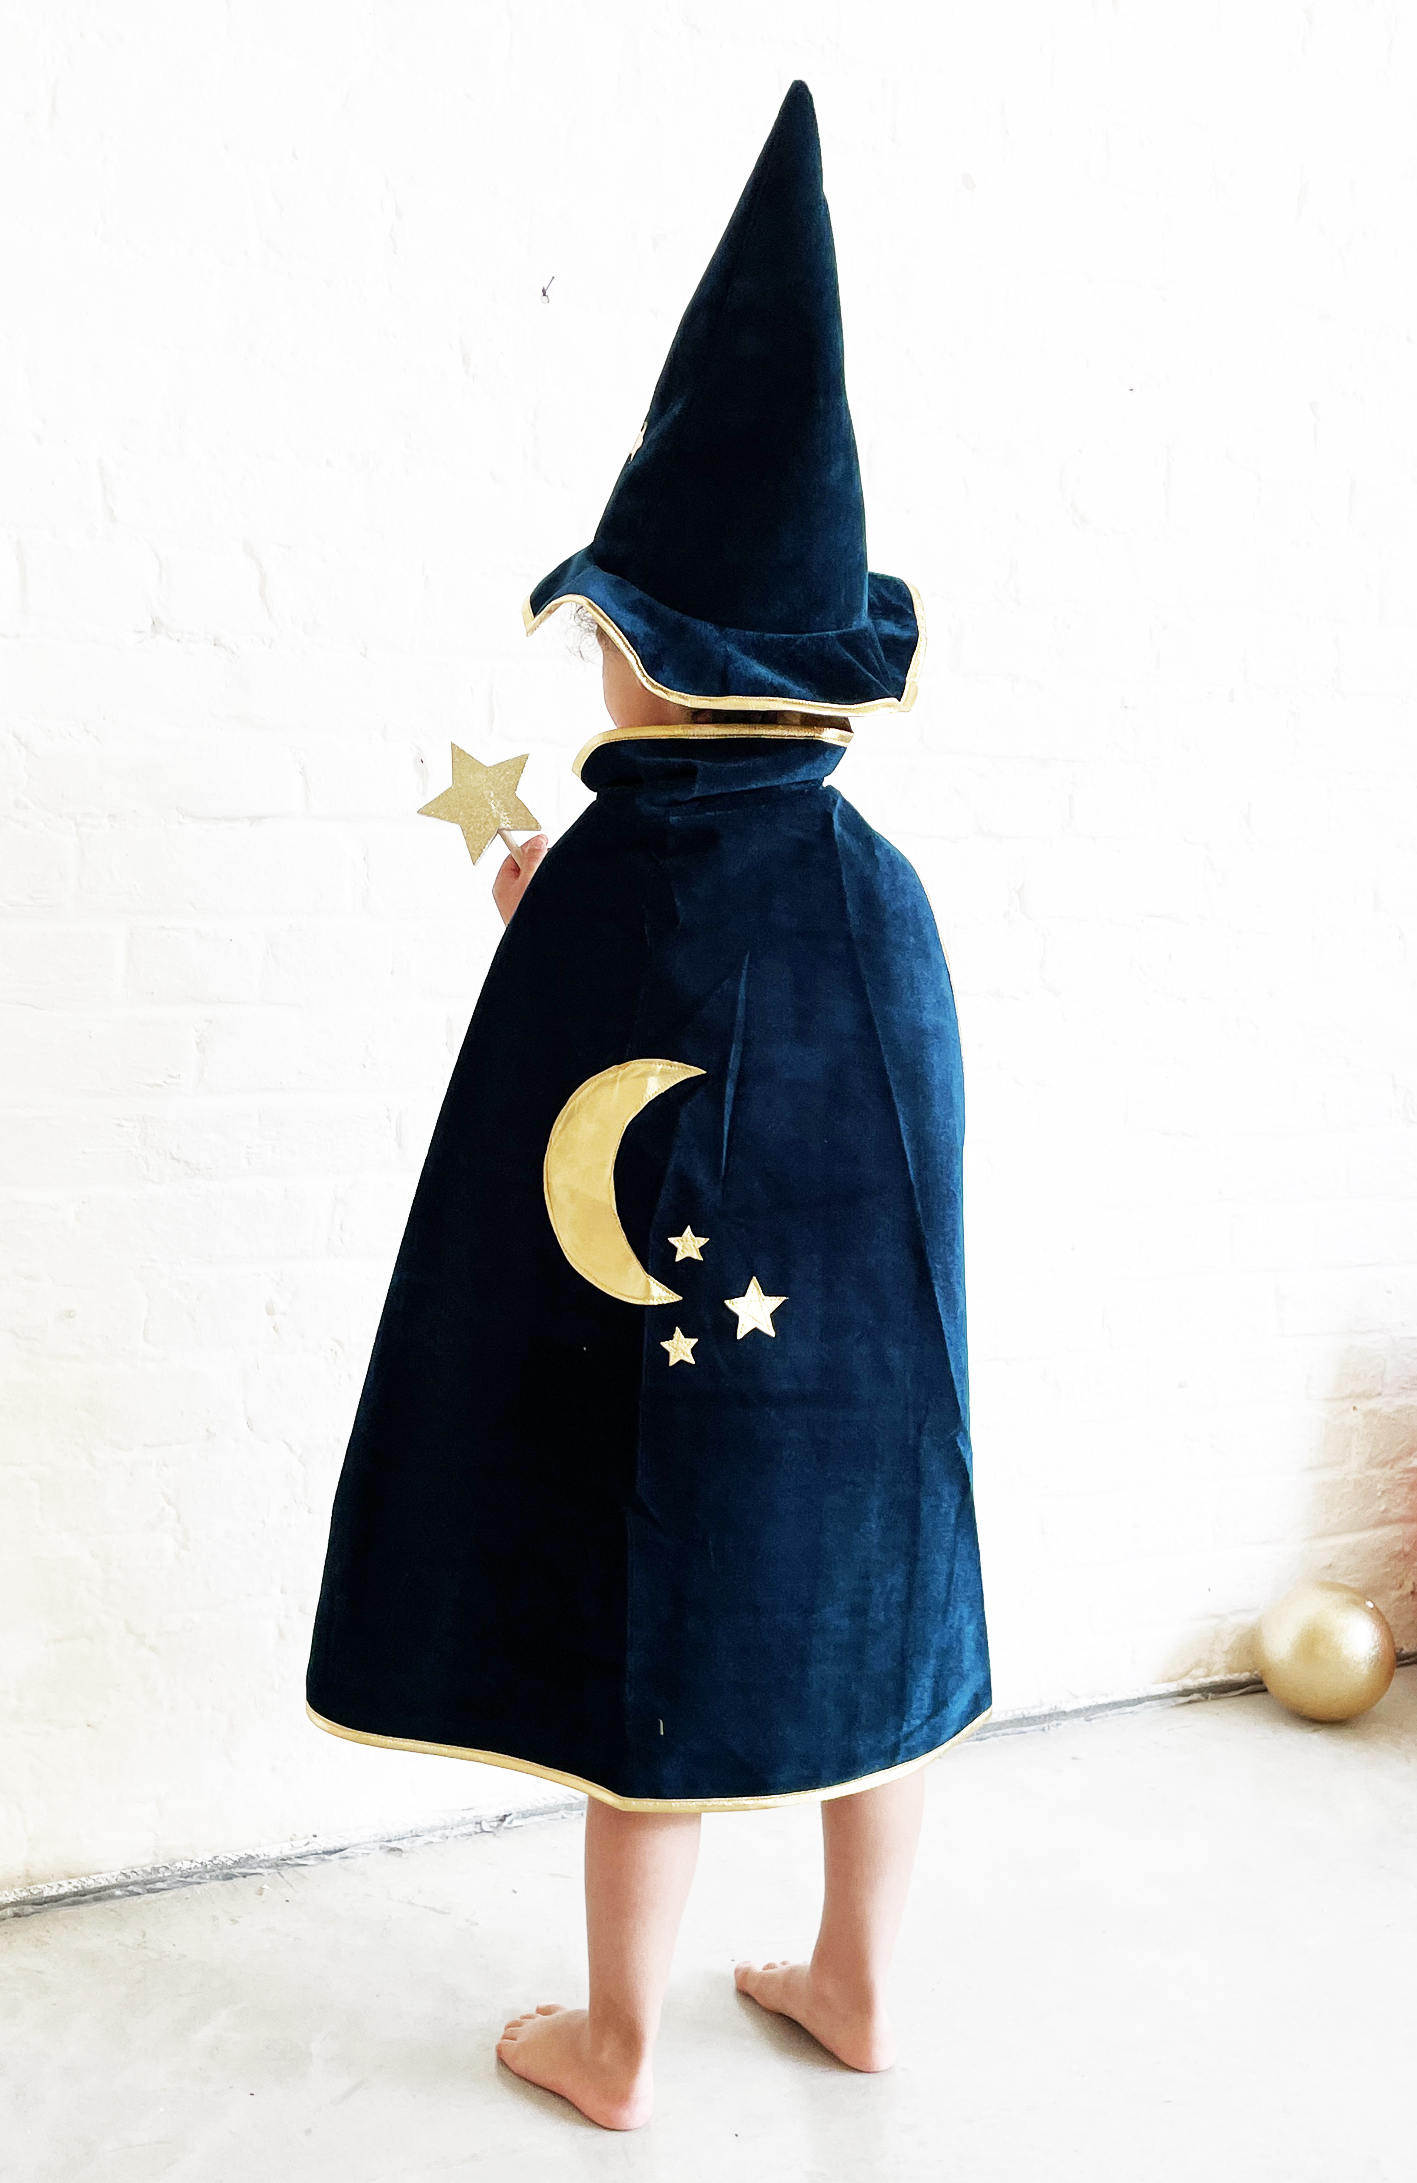 URAQT Deguisement Sorcier per Enfant, Costume de Magicien, Ensemble